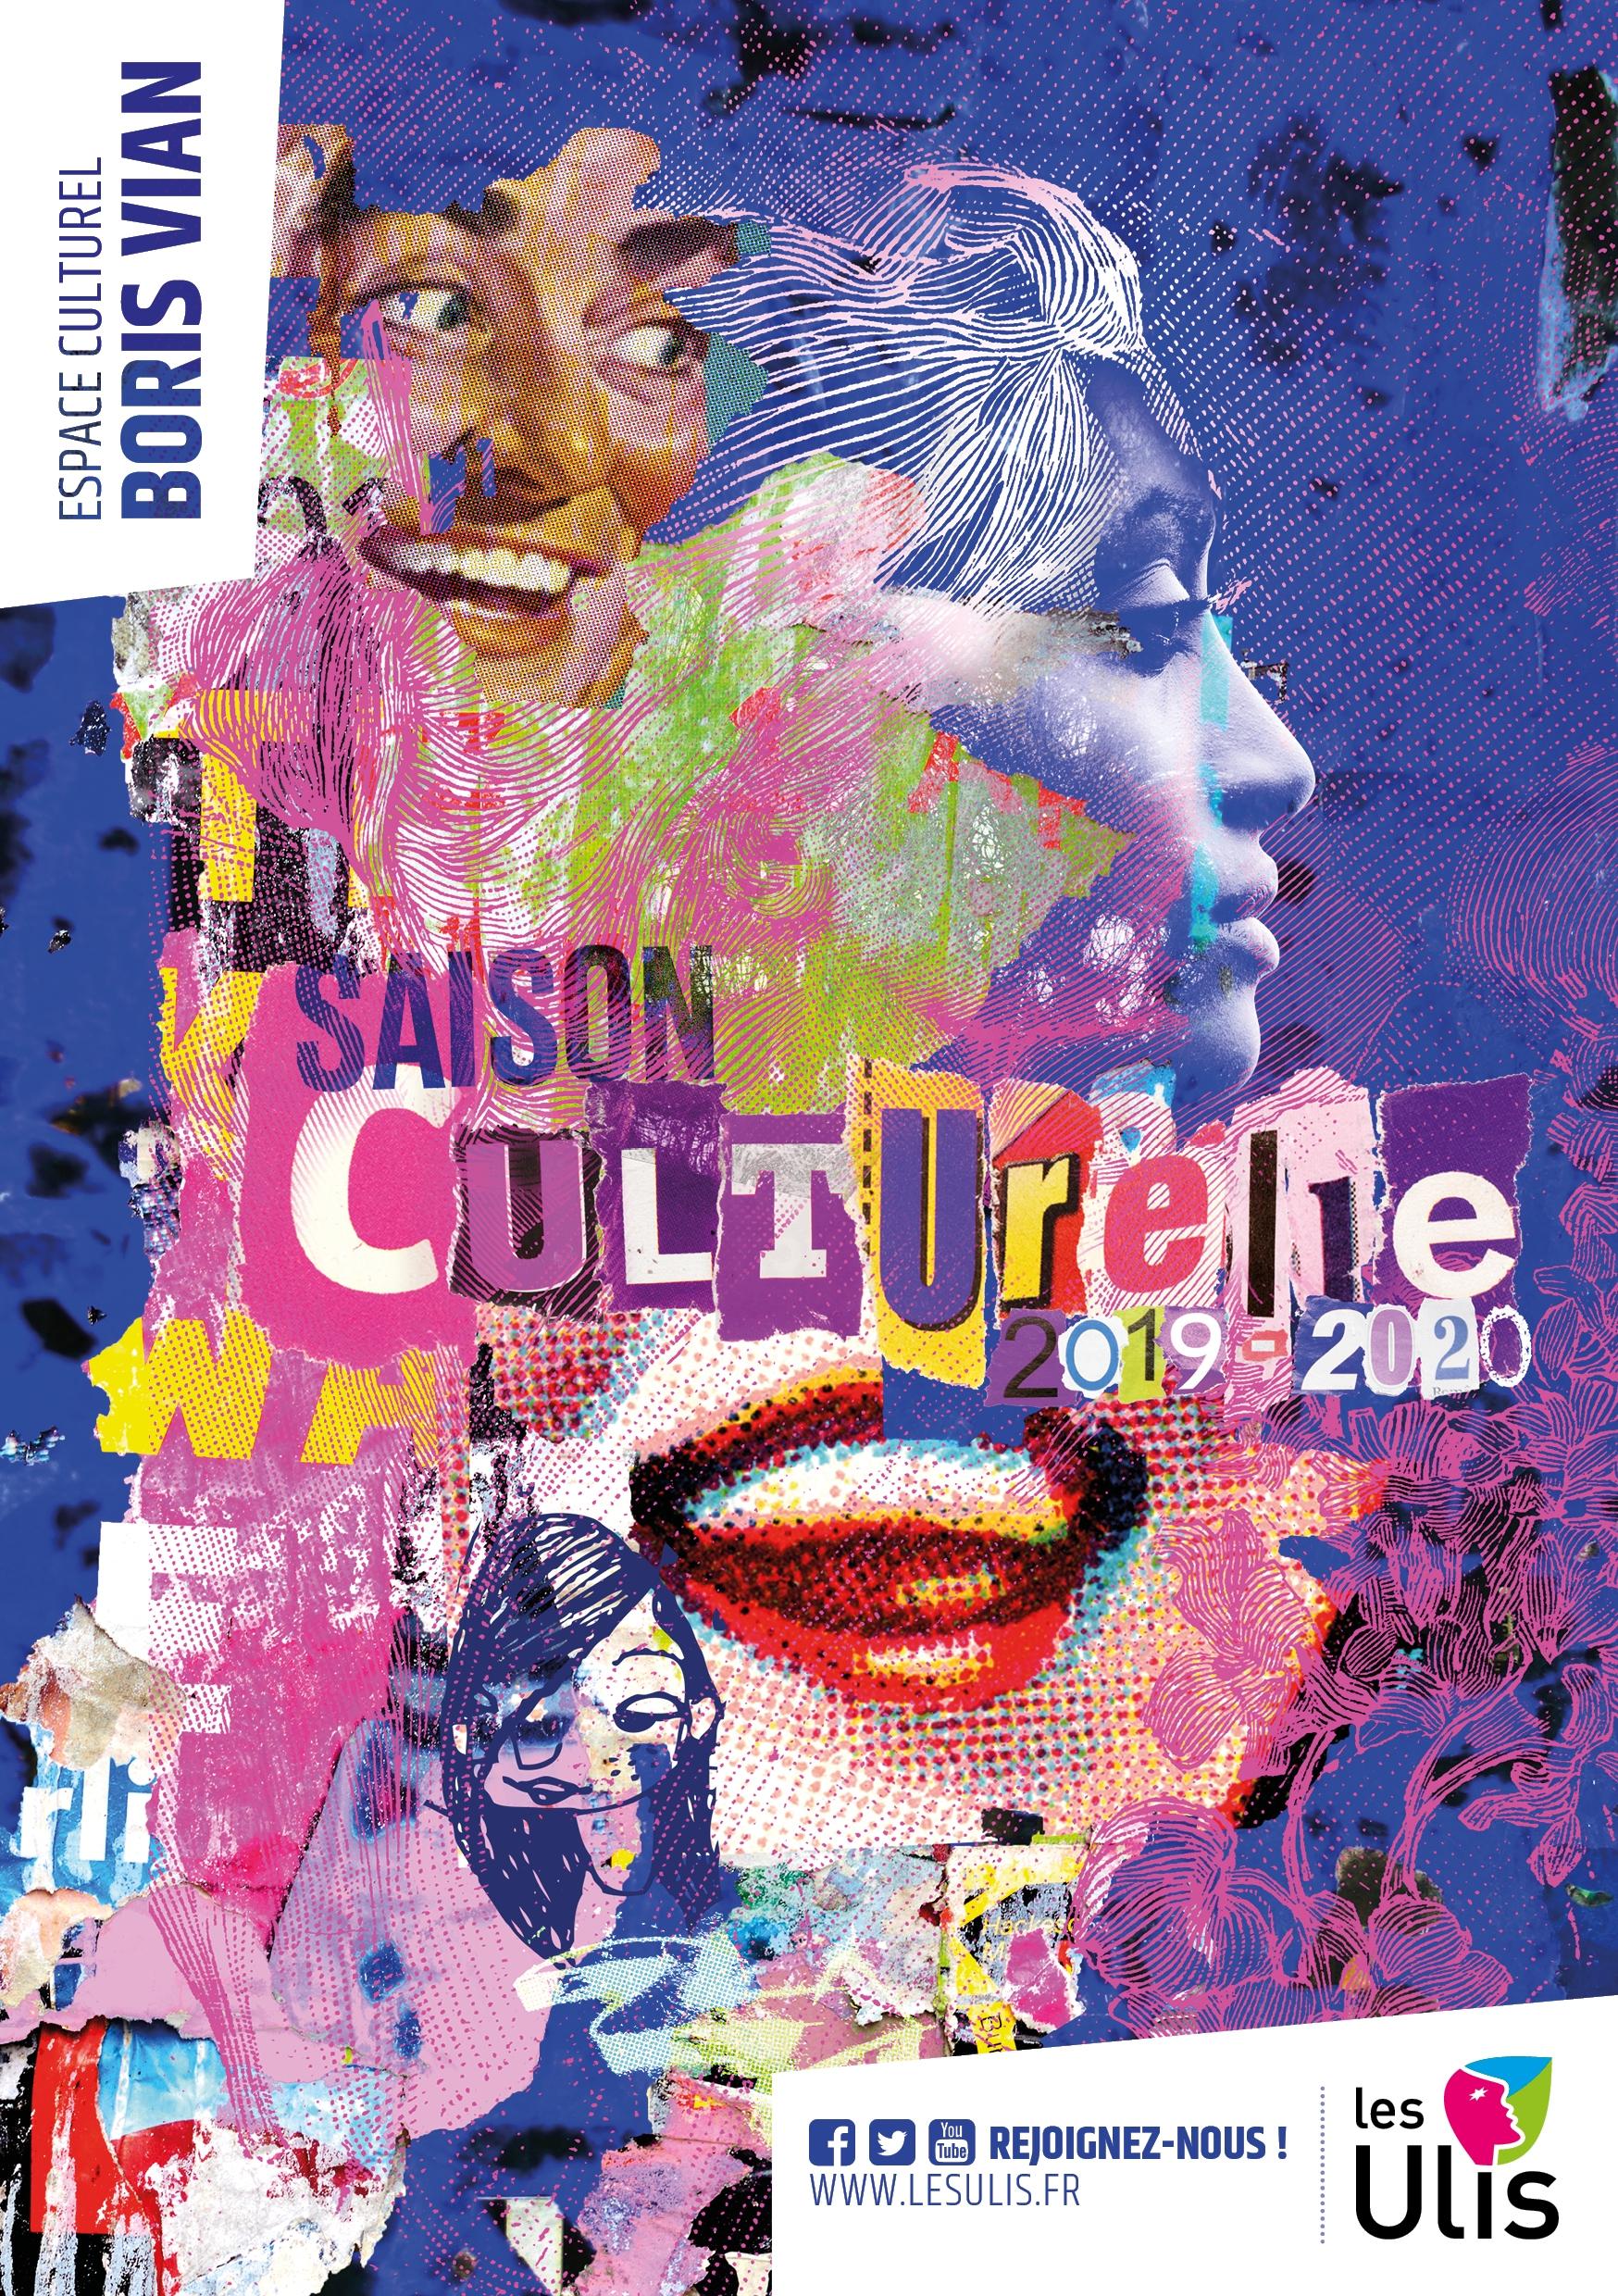 exe_visuels_ulis_saison_culturelle_2020.jpg